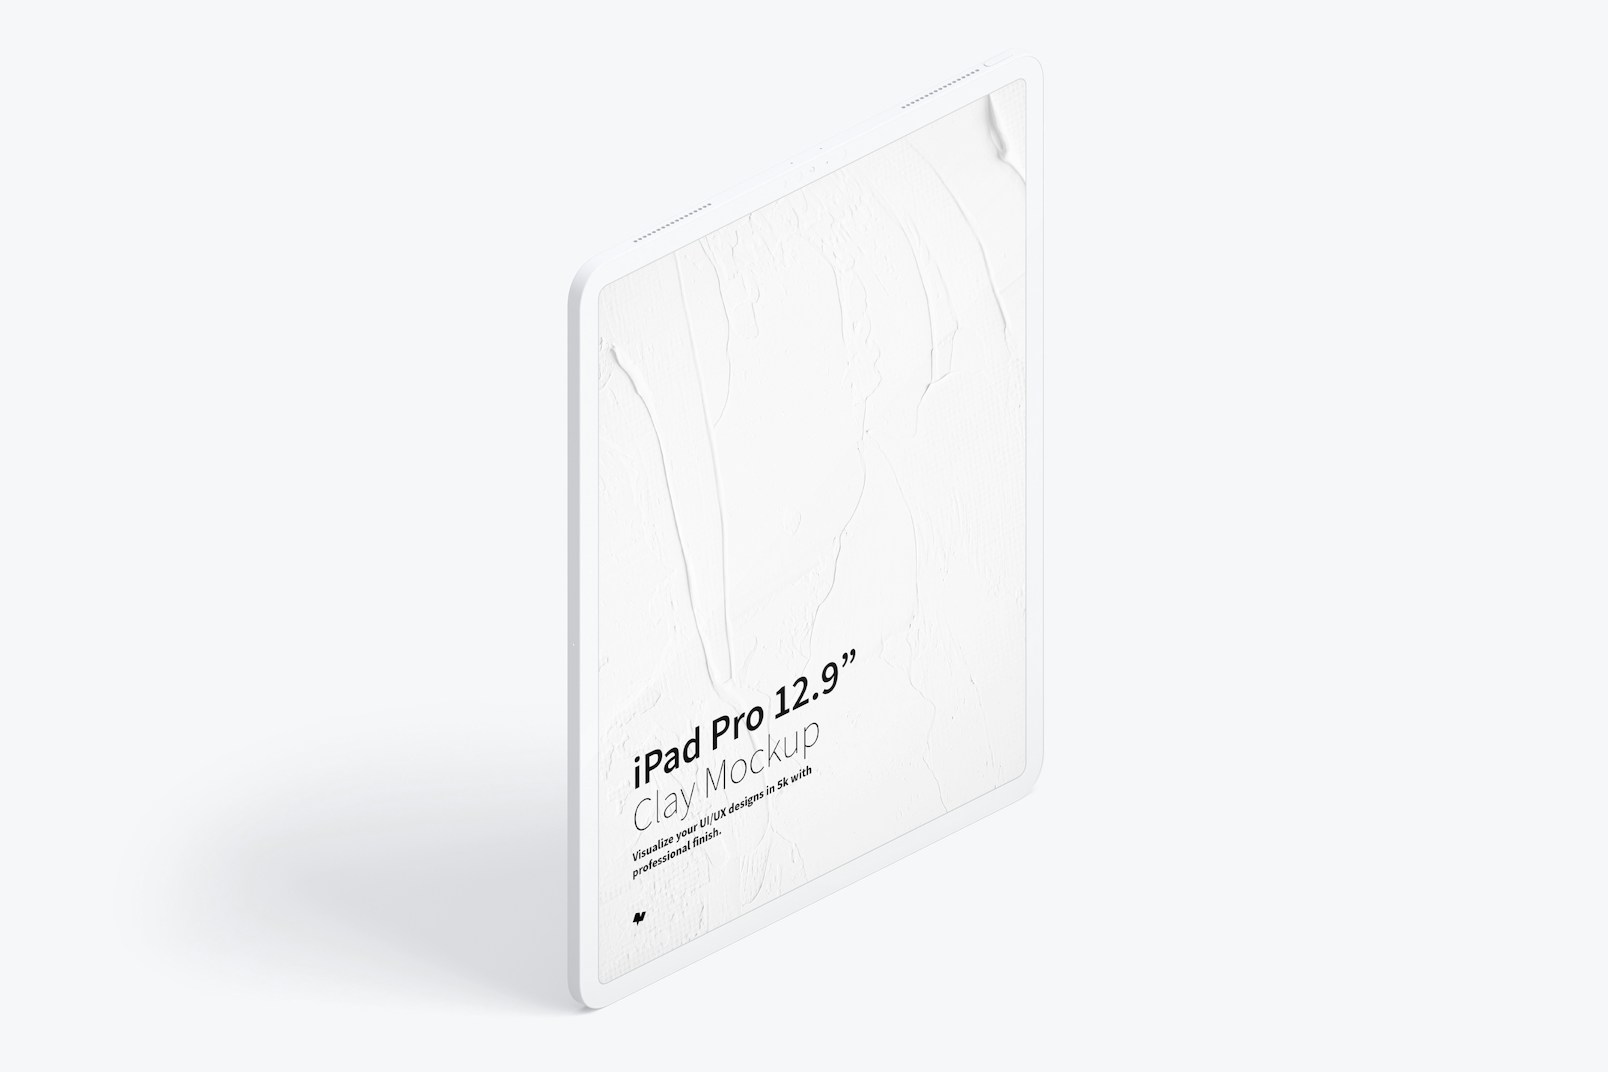 Clay iPad Pro 12.9” Mockup, Isometric Right View 02